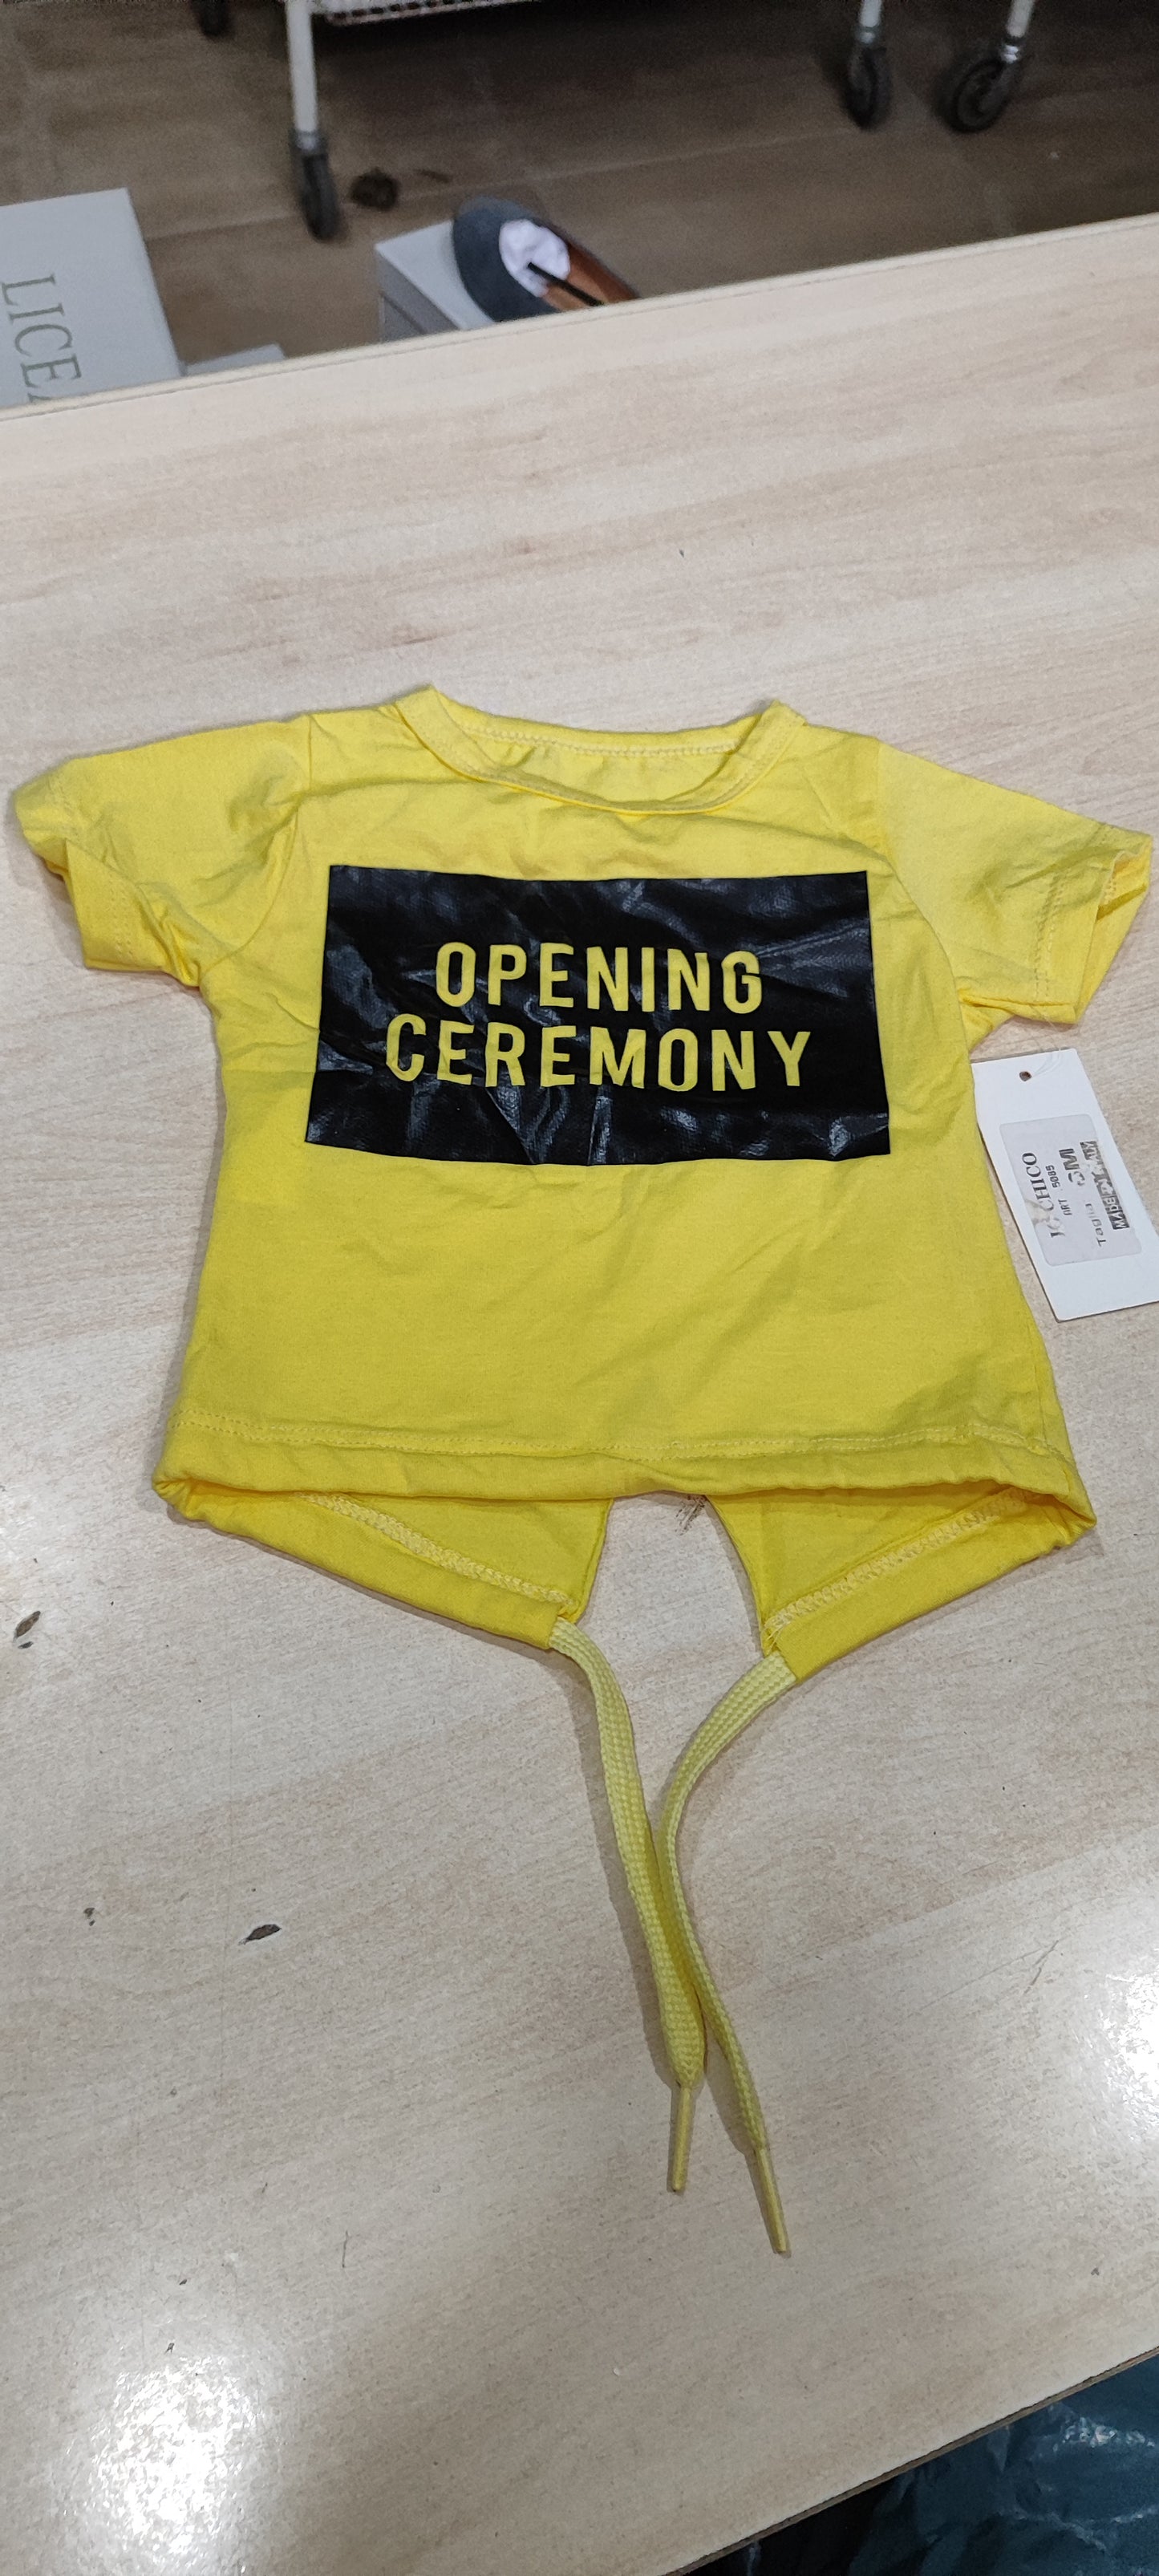 Offertissima sttimanale  magliette bimbi e neonati a 1,50 in sottocosto